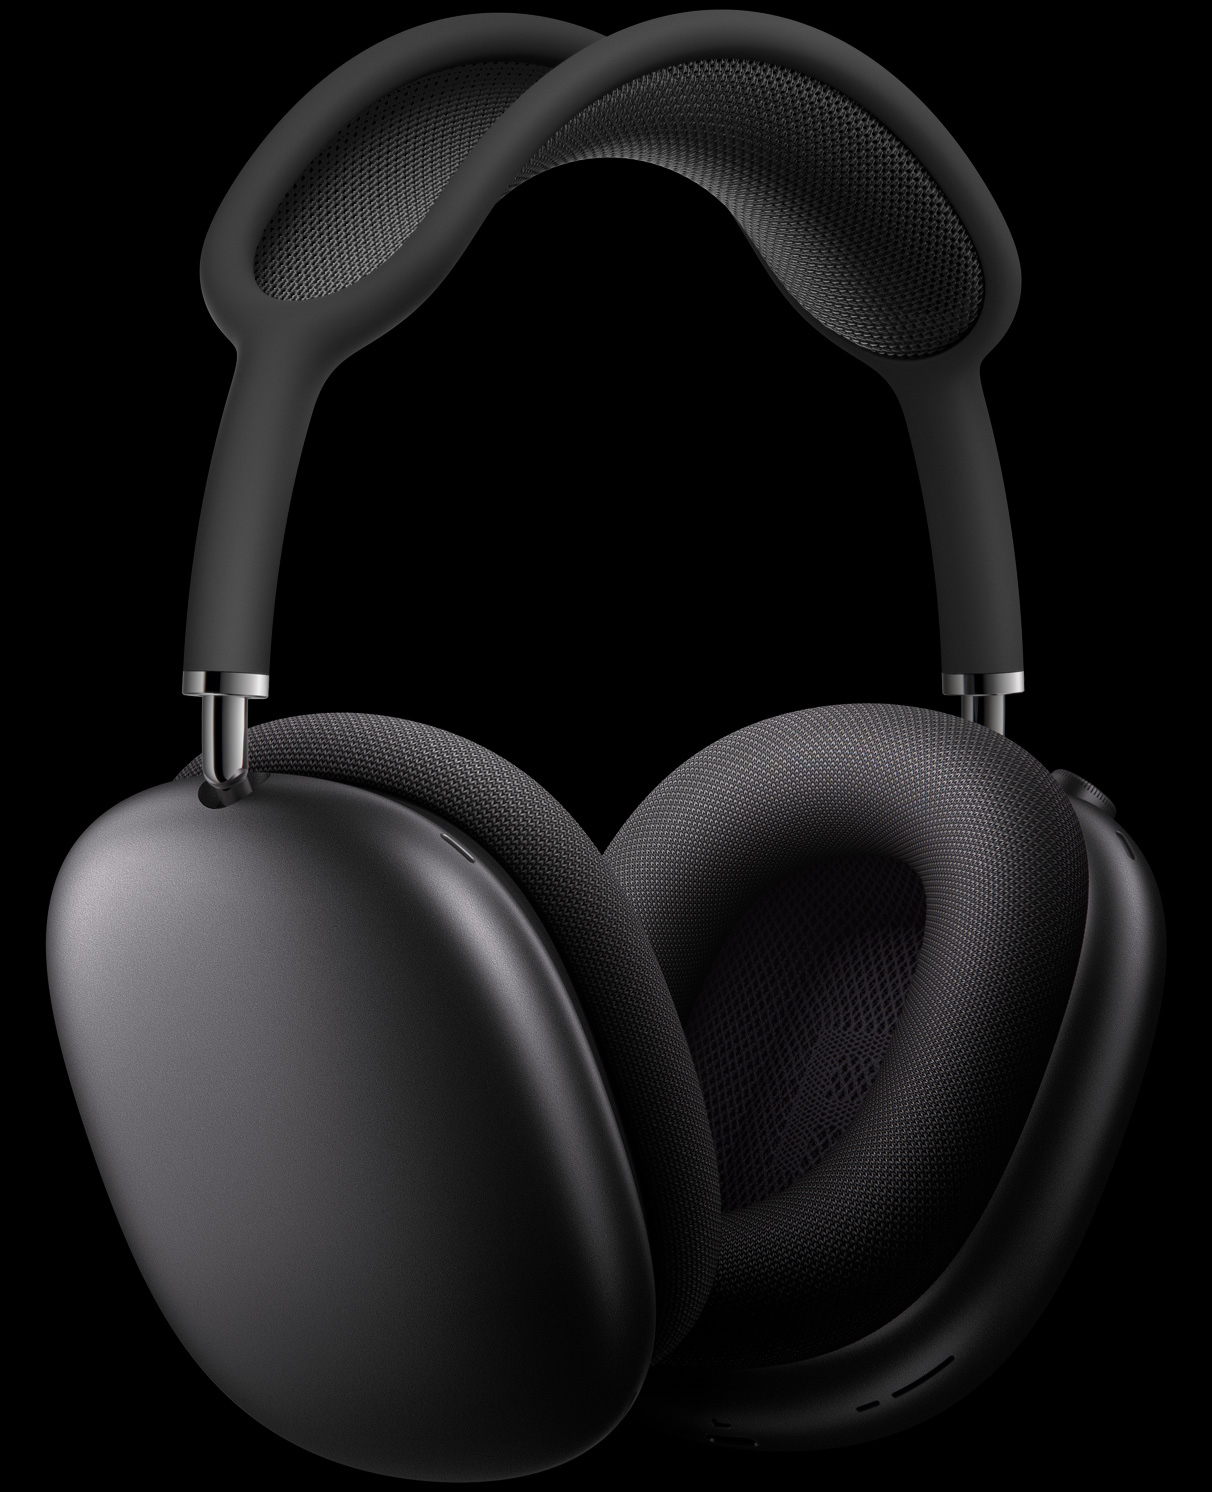 Slušalice AirPods Max u svemirski sivoj, prikazane iz tri četvrtine profila i s vanjskim mikrofonima ukomponiranima u slušalice.